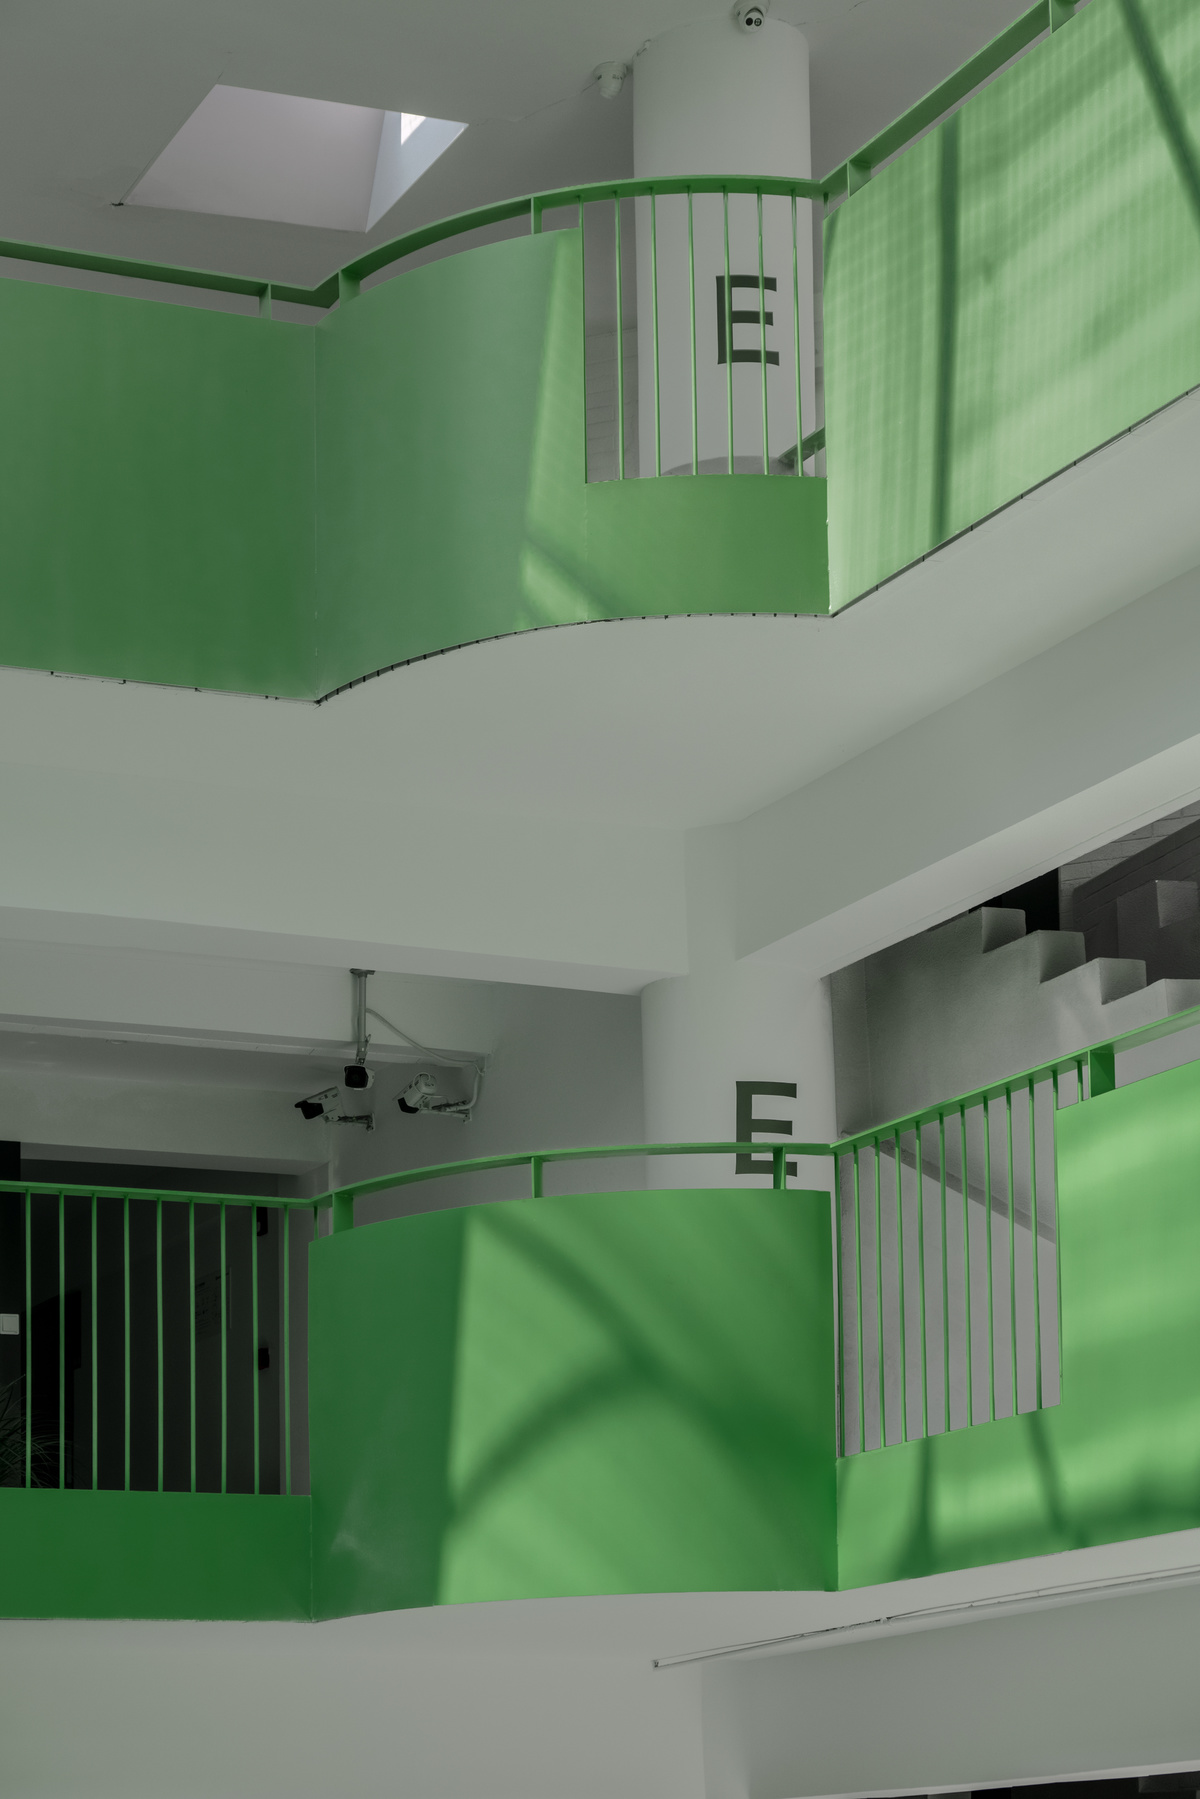 绿色天花板和楼梯的建筑物中的一个楼梯间